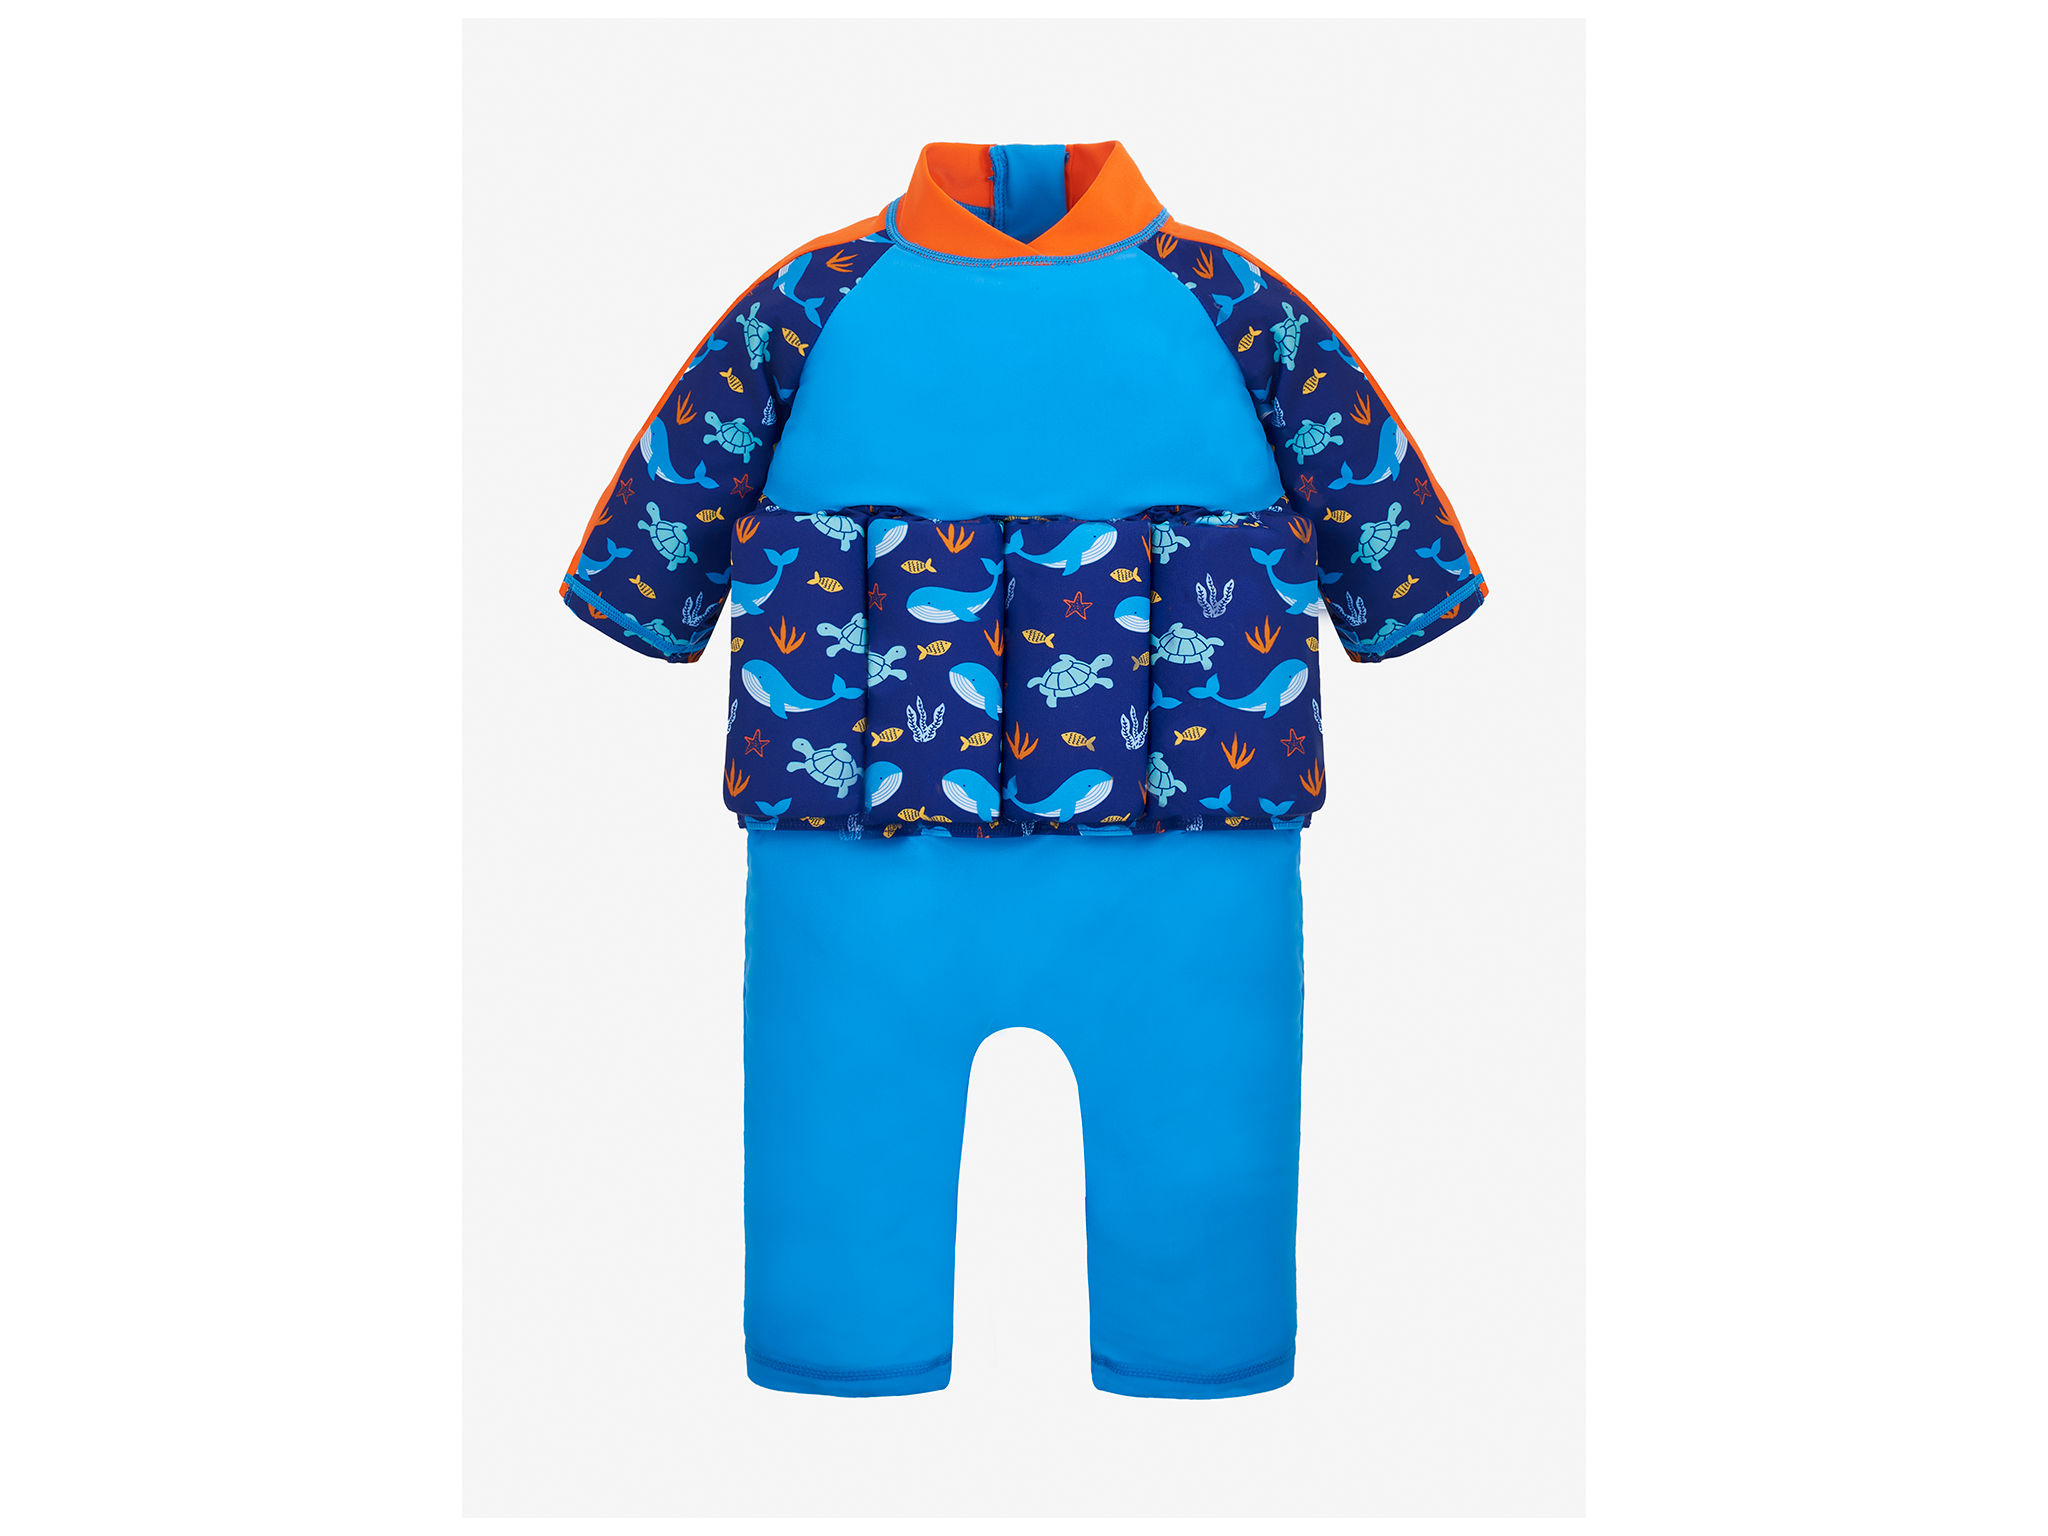 JoJo Maman Bebe ocean print sun protection float suit.png